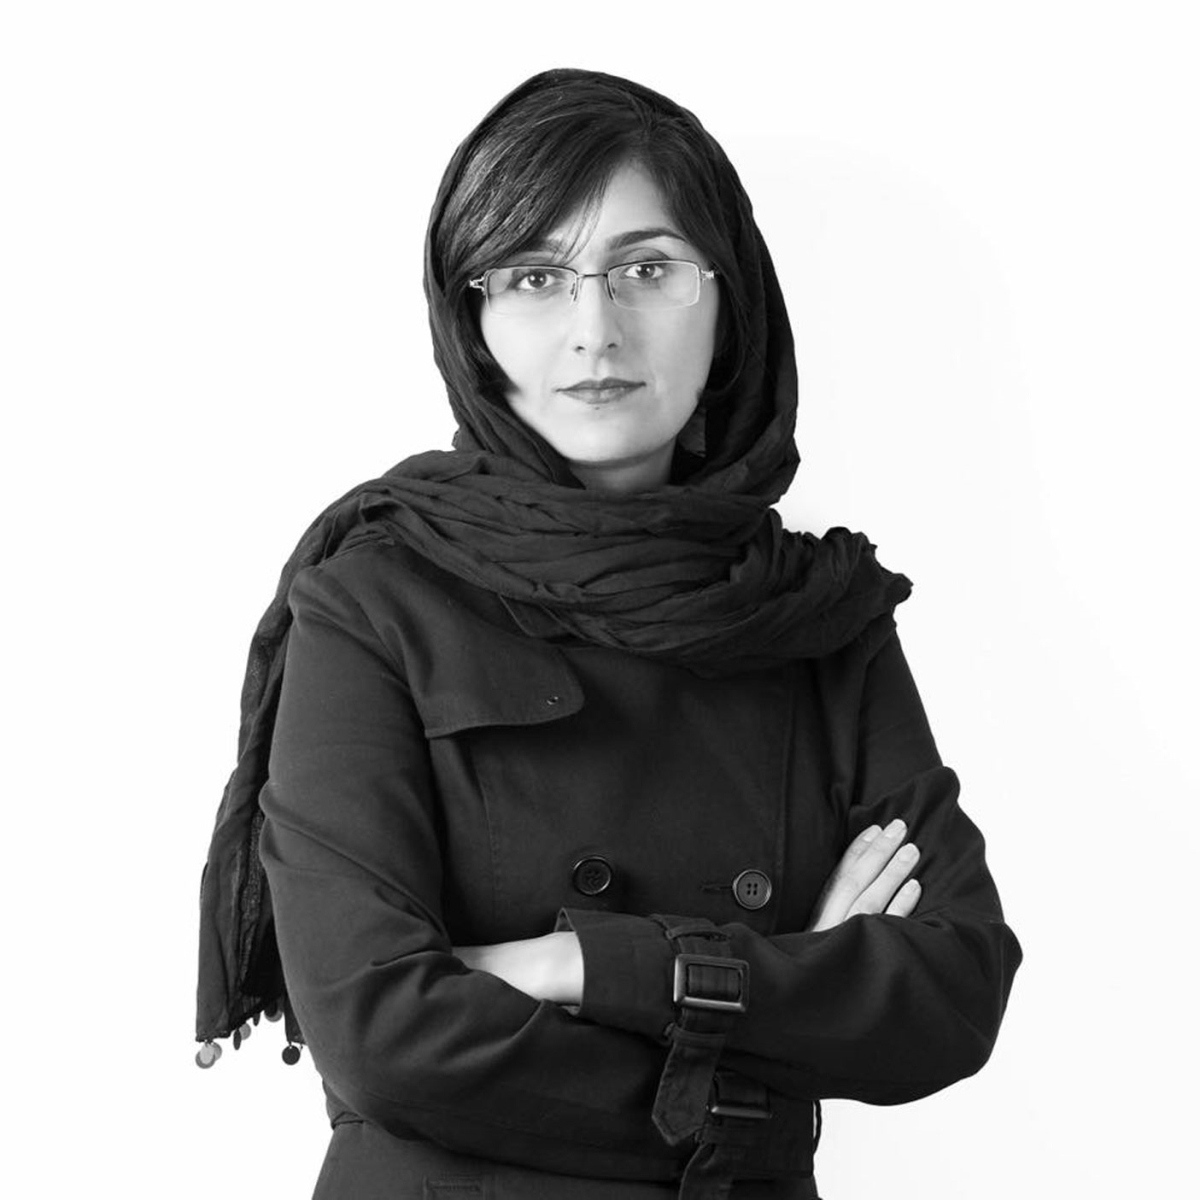 این دختر جوان، زیباترین سازه تهران را خلق کرد